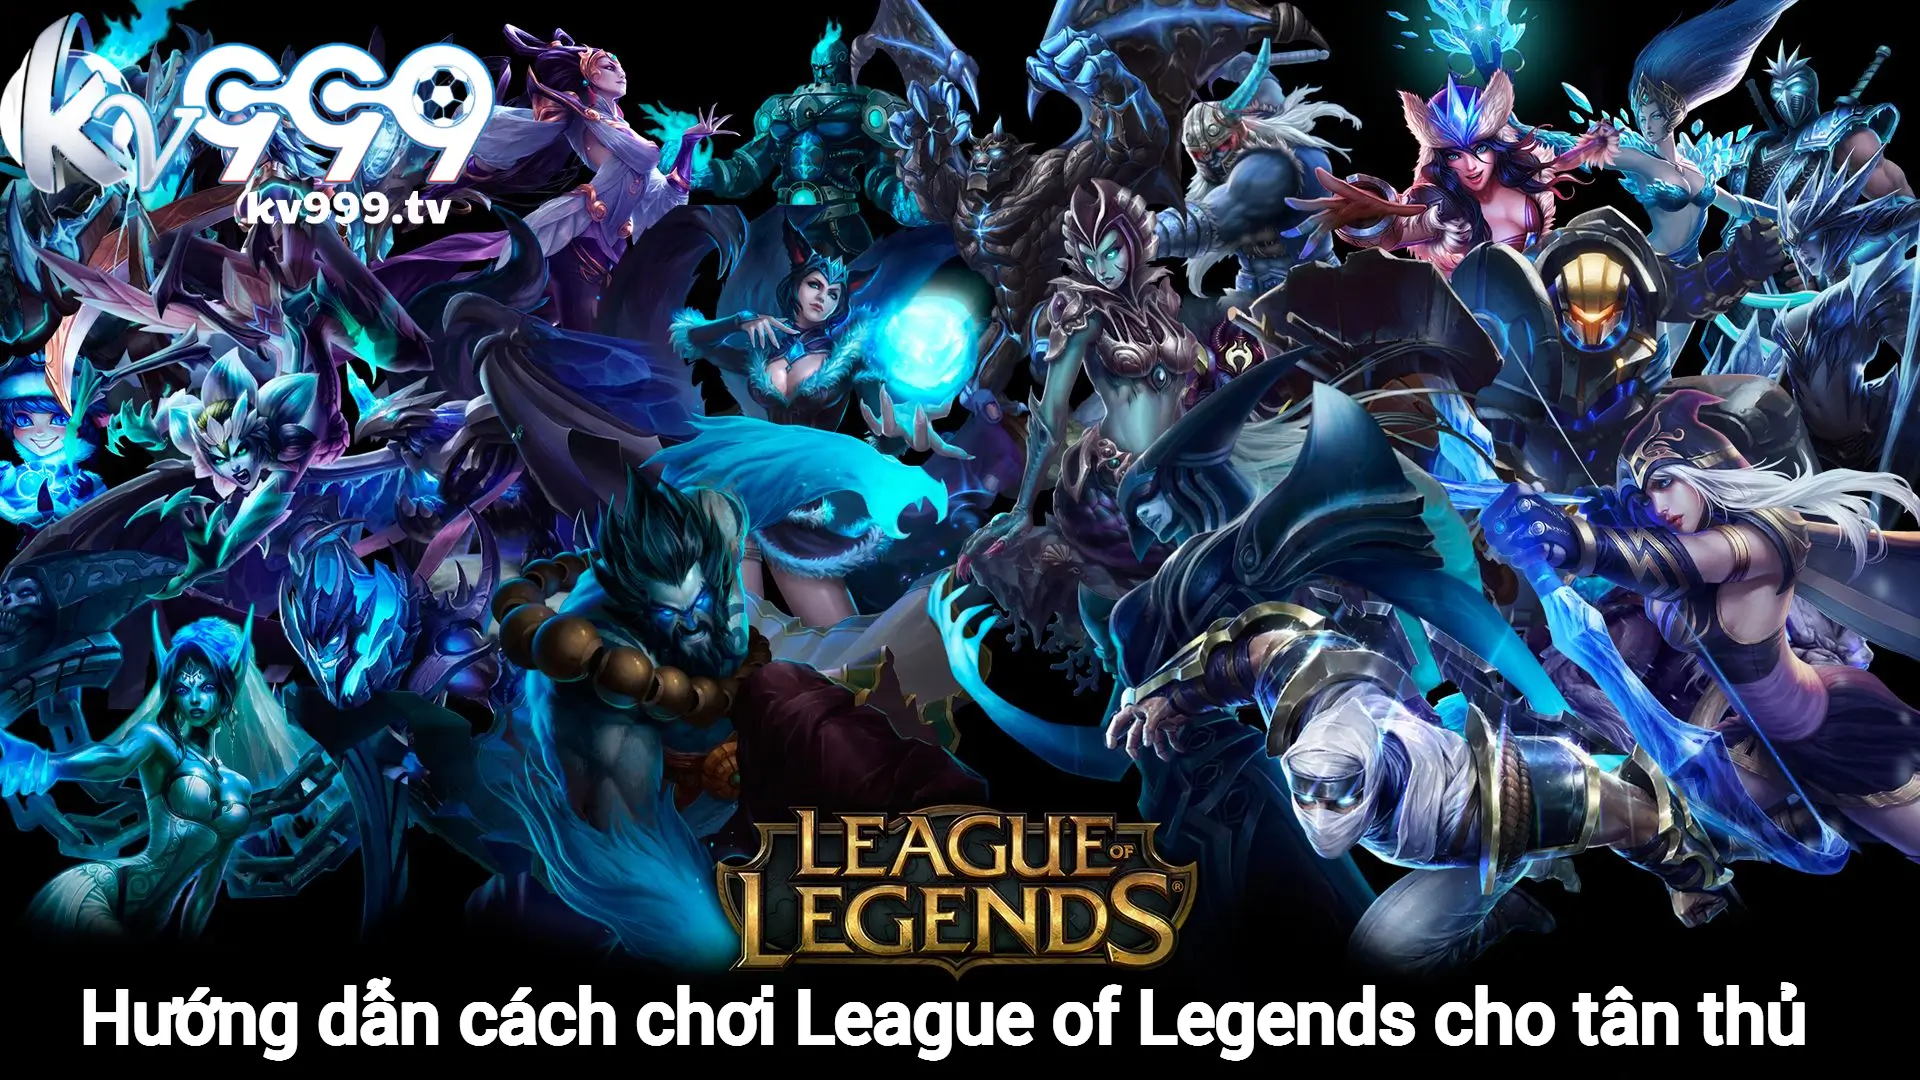 Hướng dẫn cách chơi League of Legends cho tân thủ